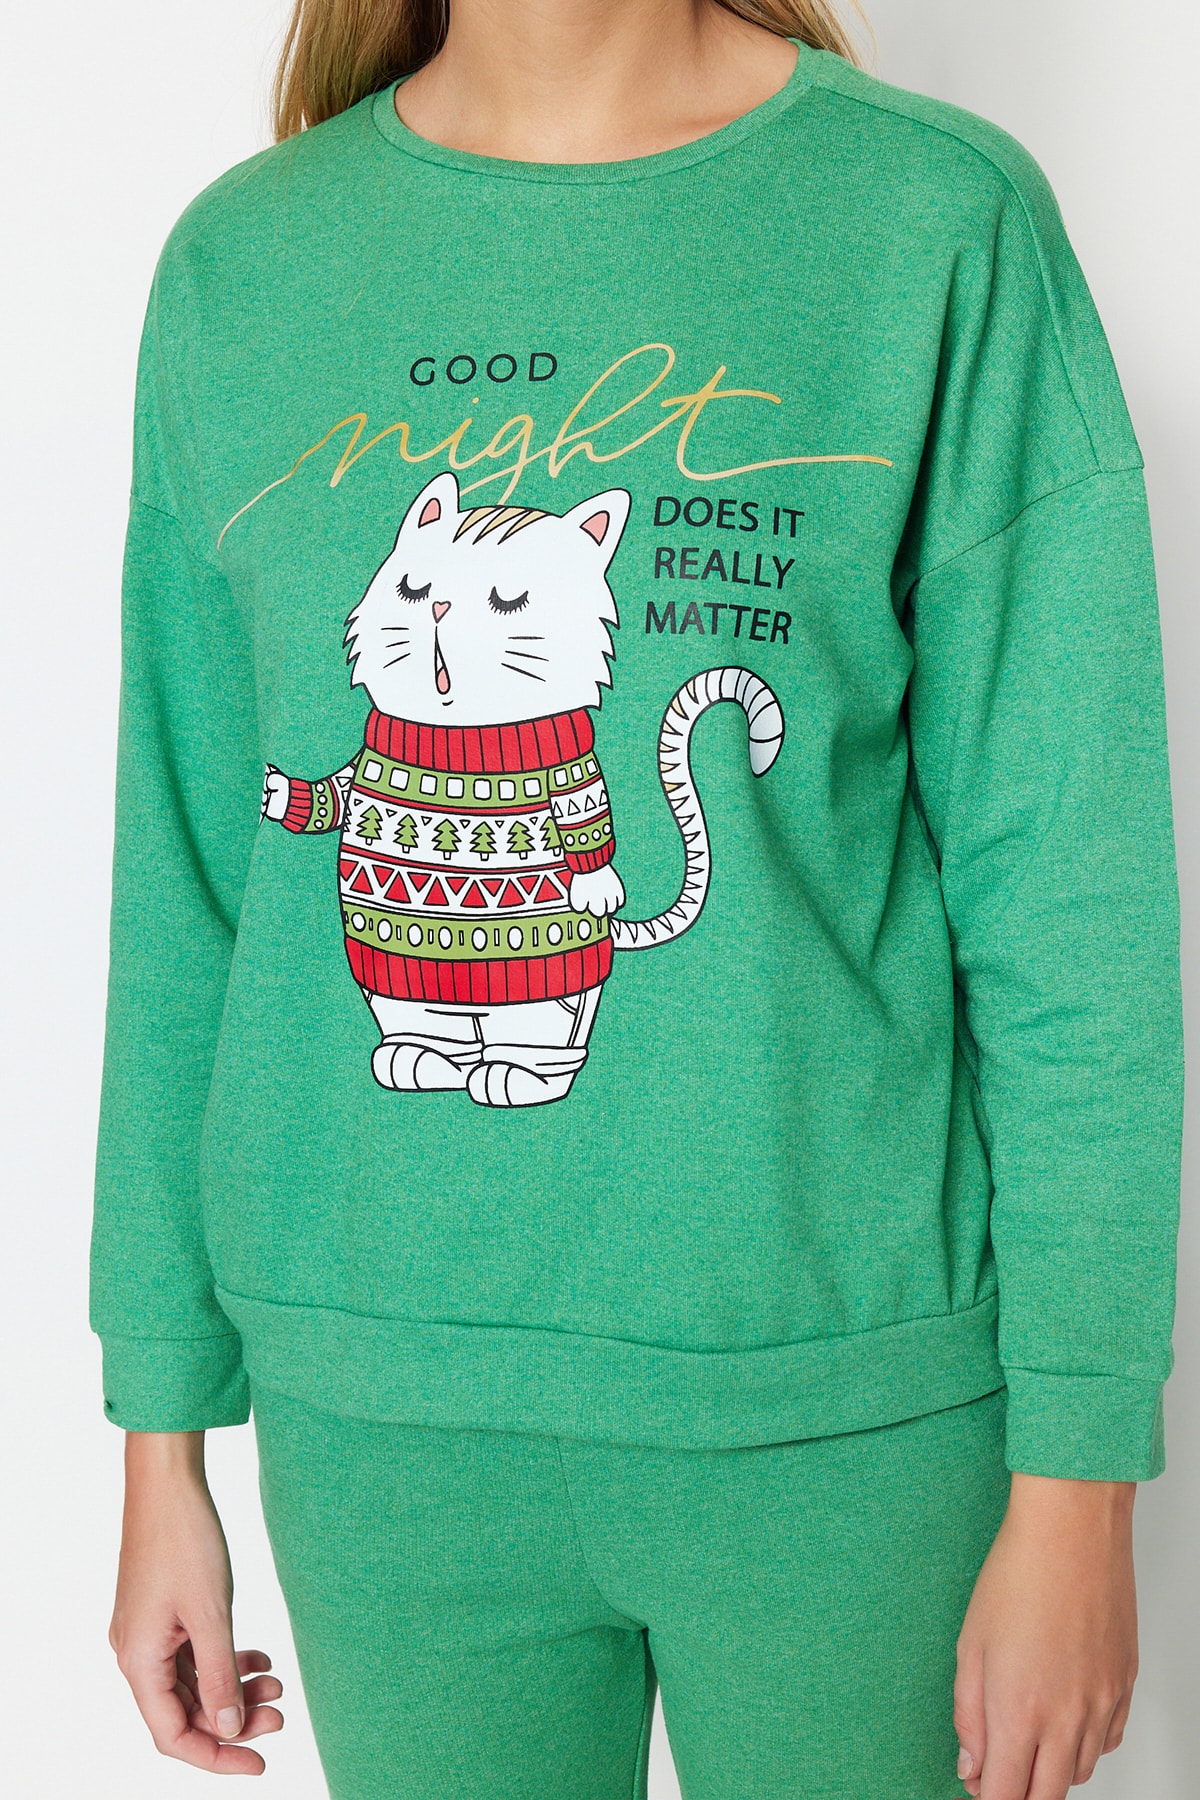 Trendyol Collection Pyjama Grün Mit Slogan Fast ausverkauft